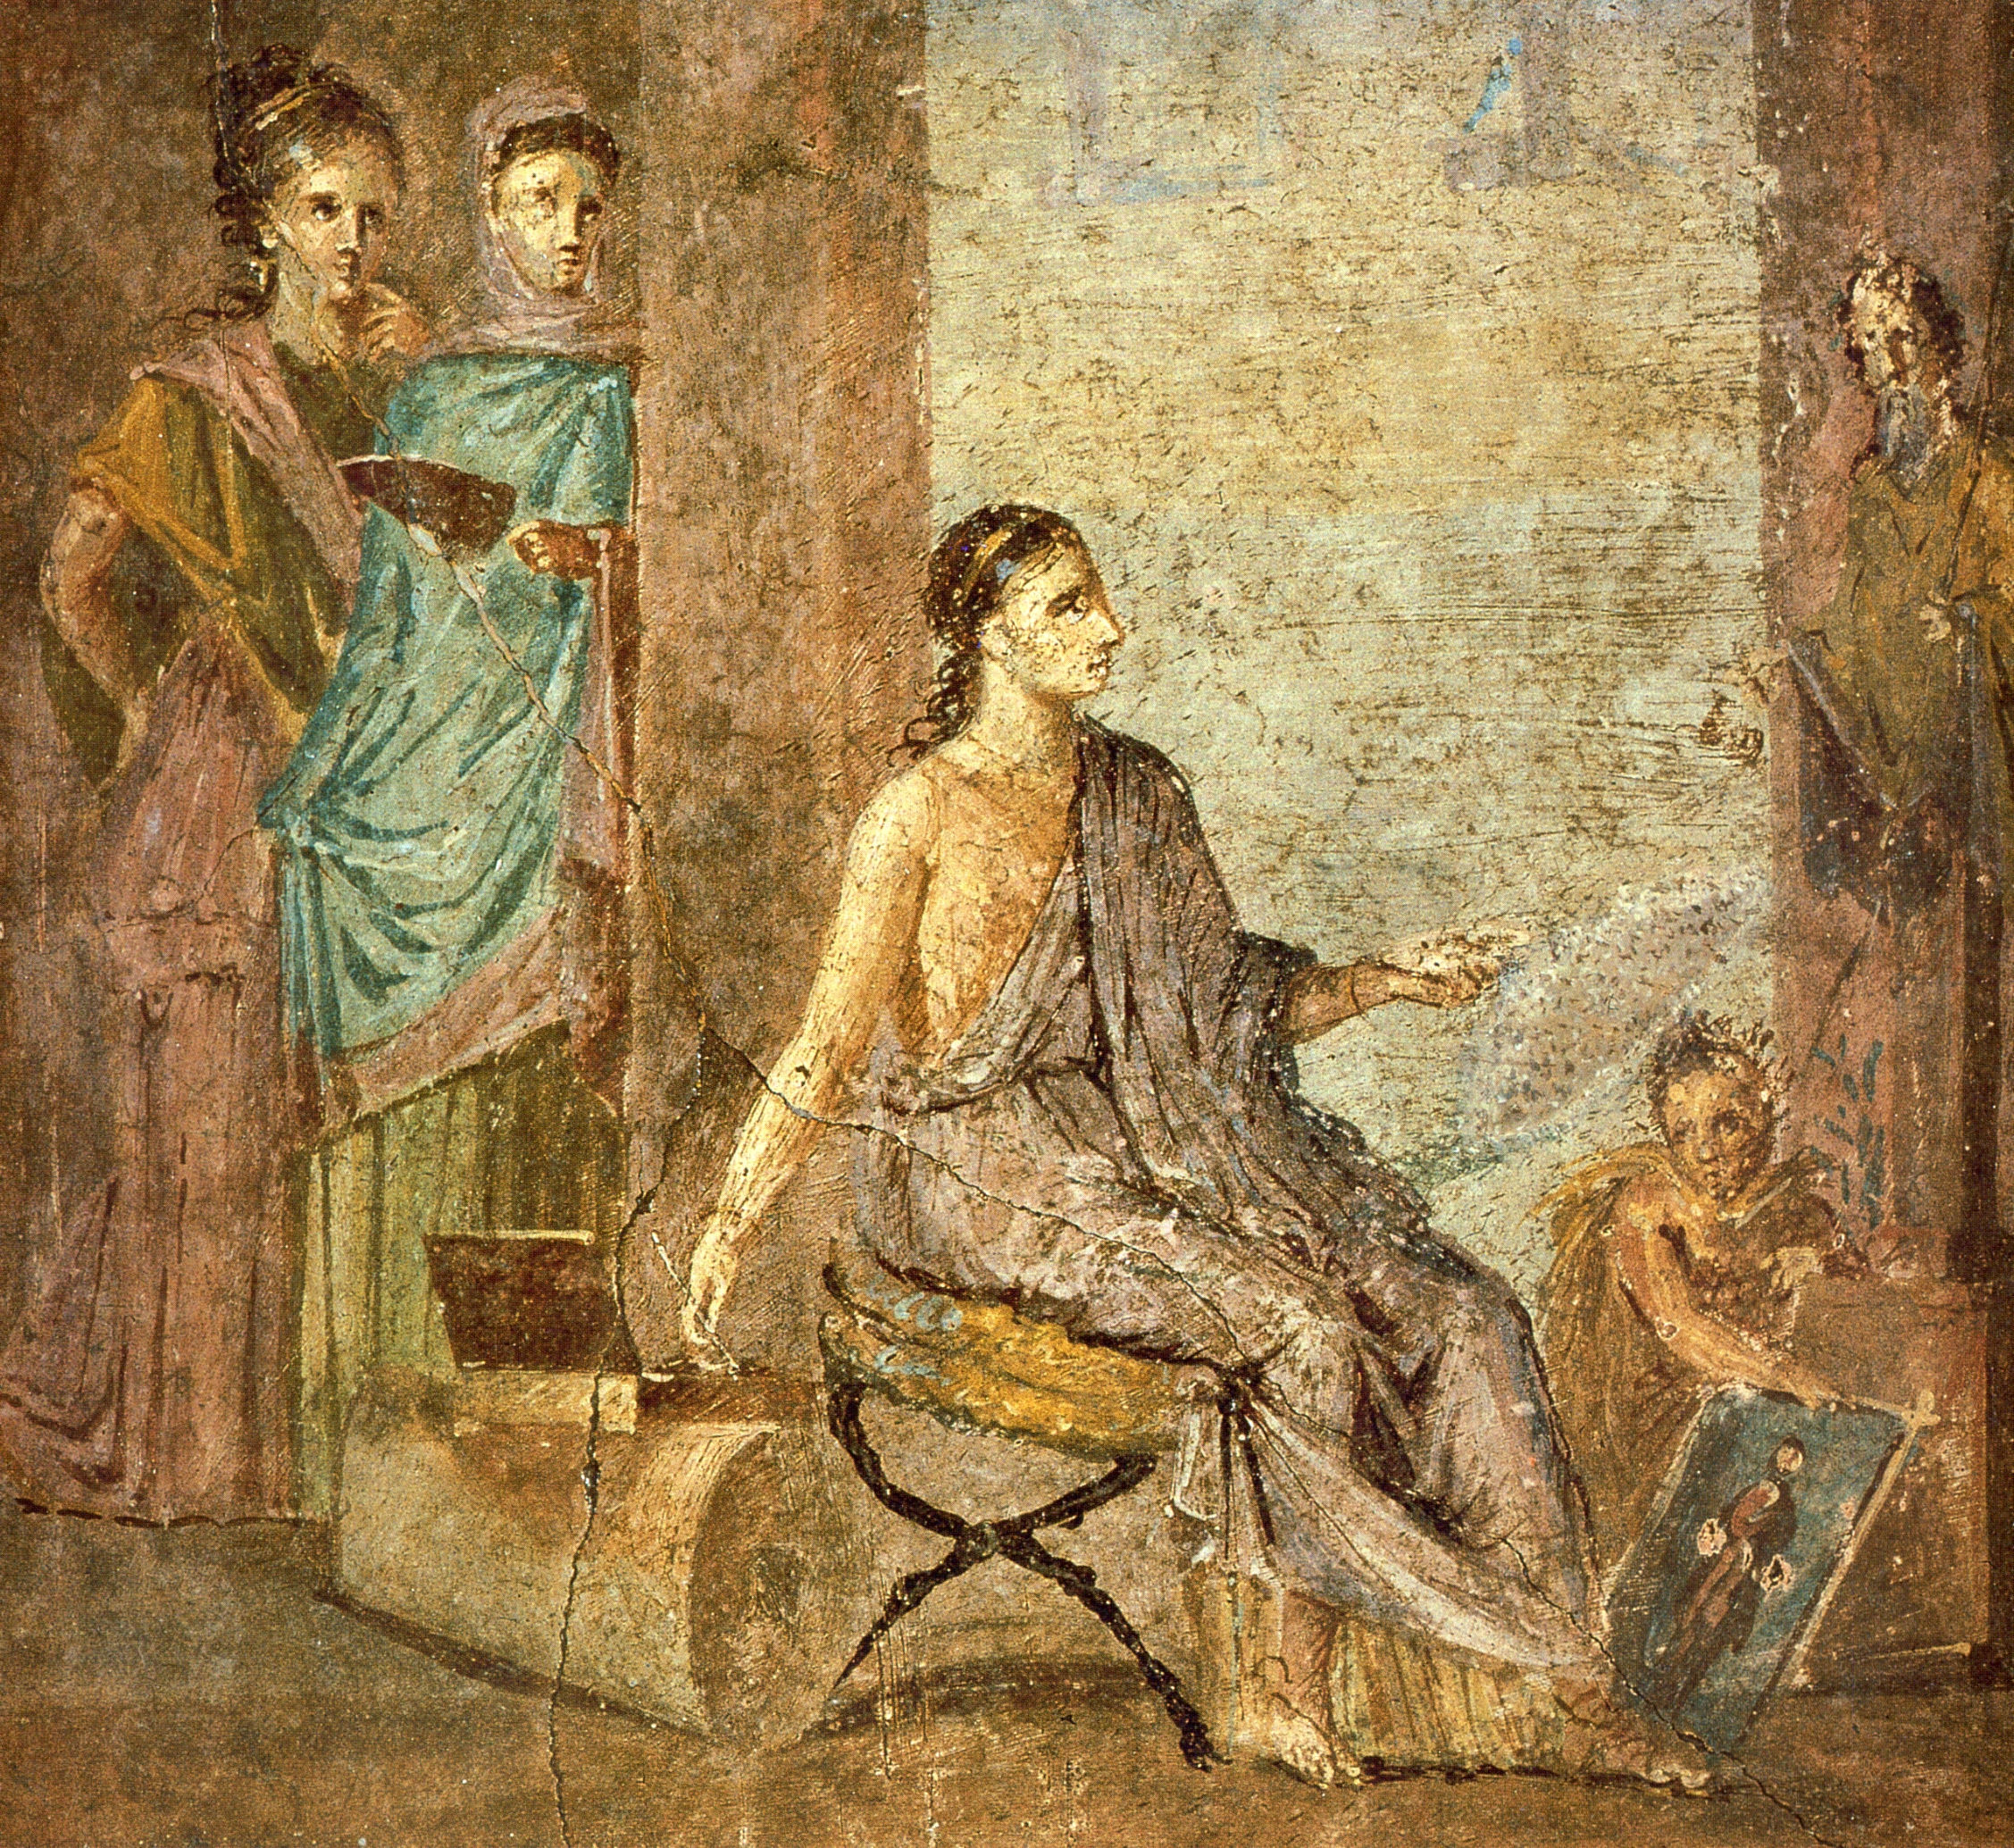 Le développement urbain de Pompéi de la fin du VIIe s. av. J.-C. à 79 apr J.C - Épisode 4 : Pompéi : panorama de l’artisanat